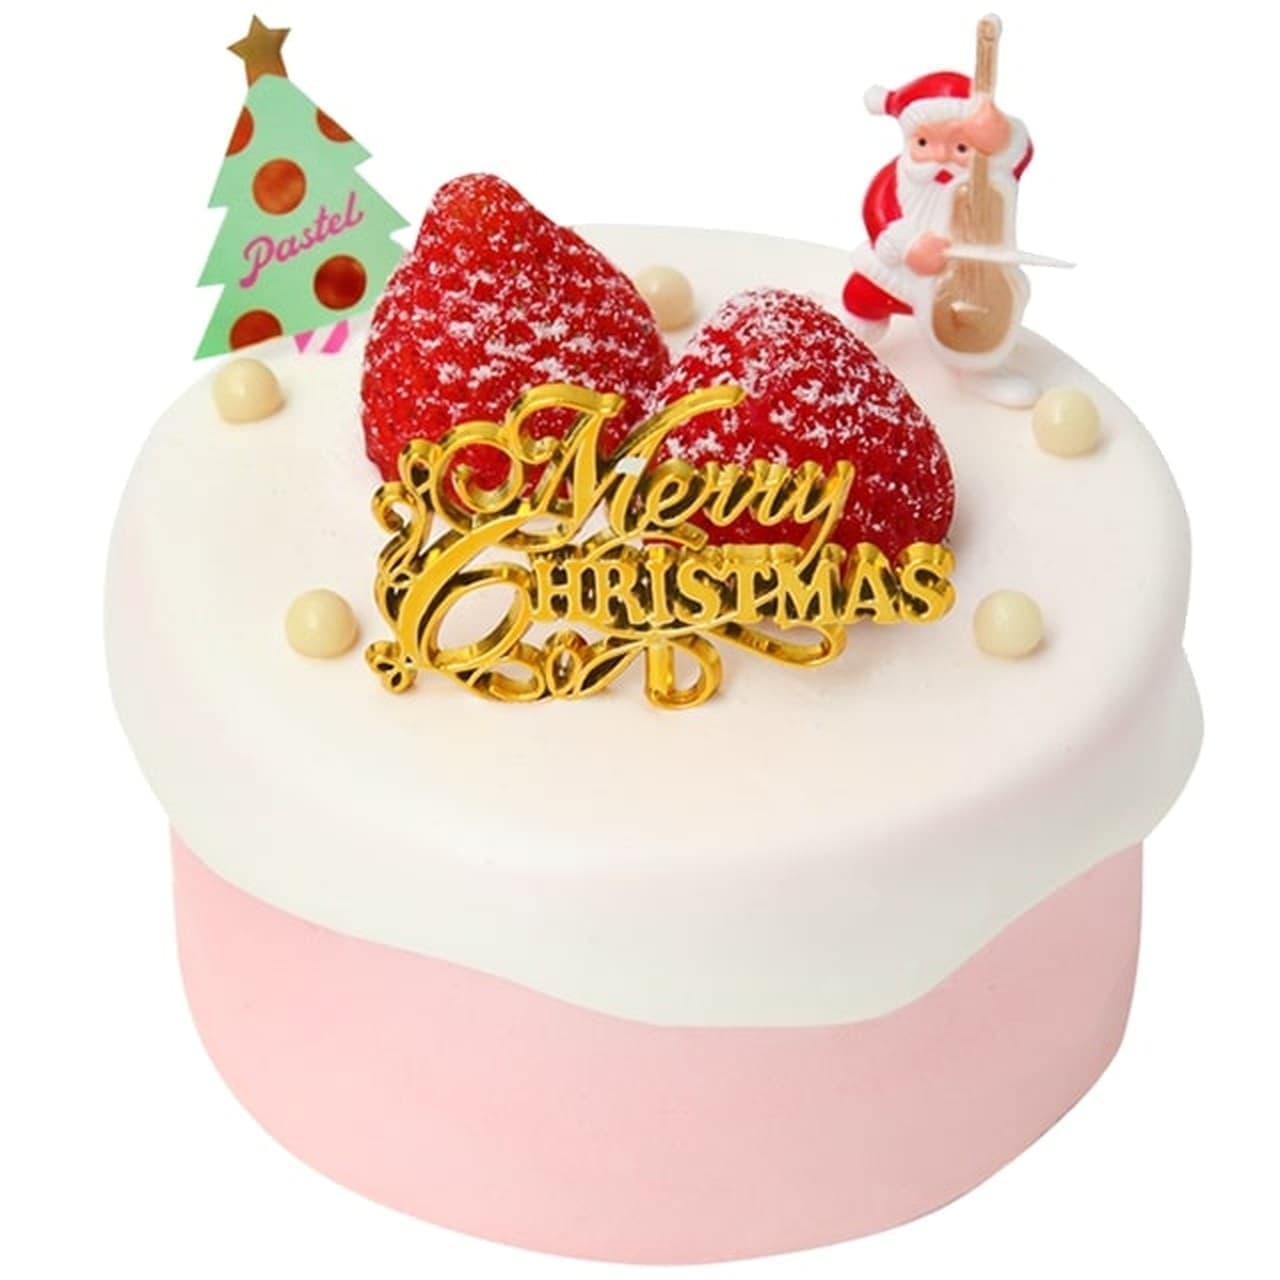 Pastel Christmas cake